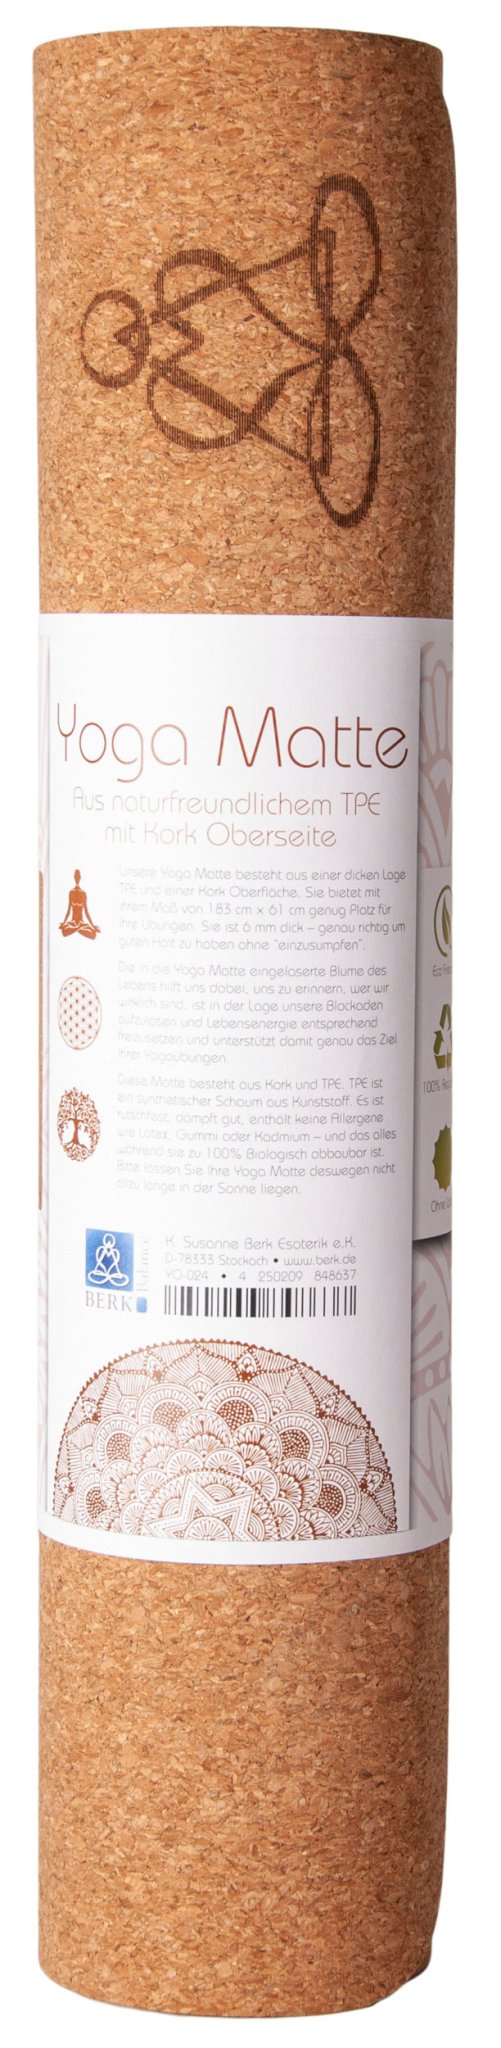 Yogamatte aus Kork mit Blume des Lebens 6mm zweischichtig mit TPE ecofriendly Lage - Ritualmanufaktur.de